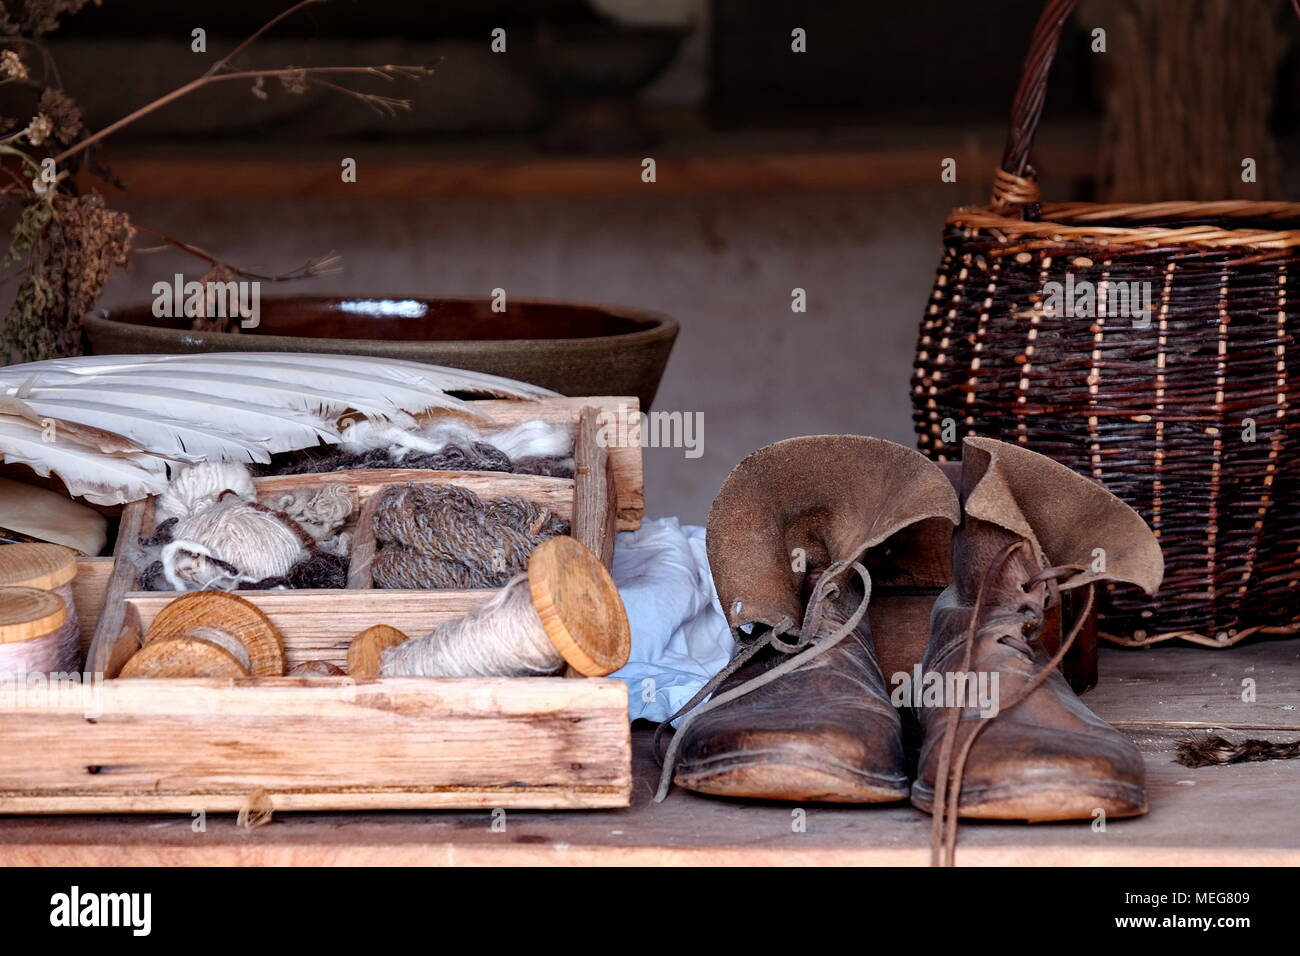 Un surtido de zapatos, bobinas, cestas y cajas en el museo Weald y cerros, Chichester. Foto de stock